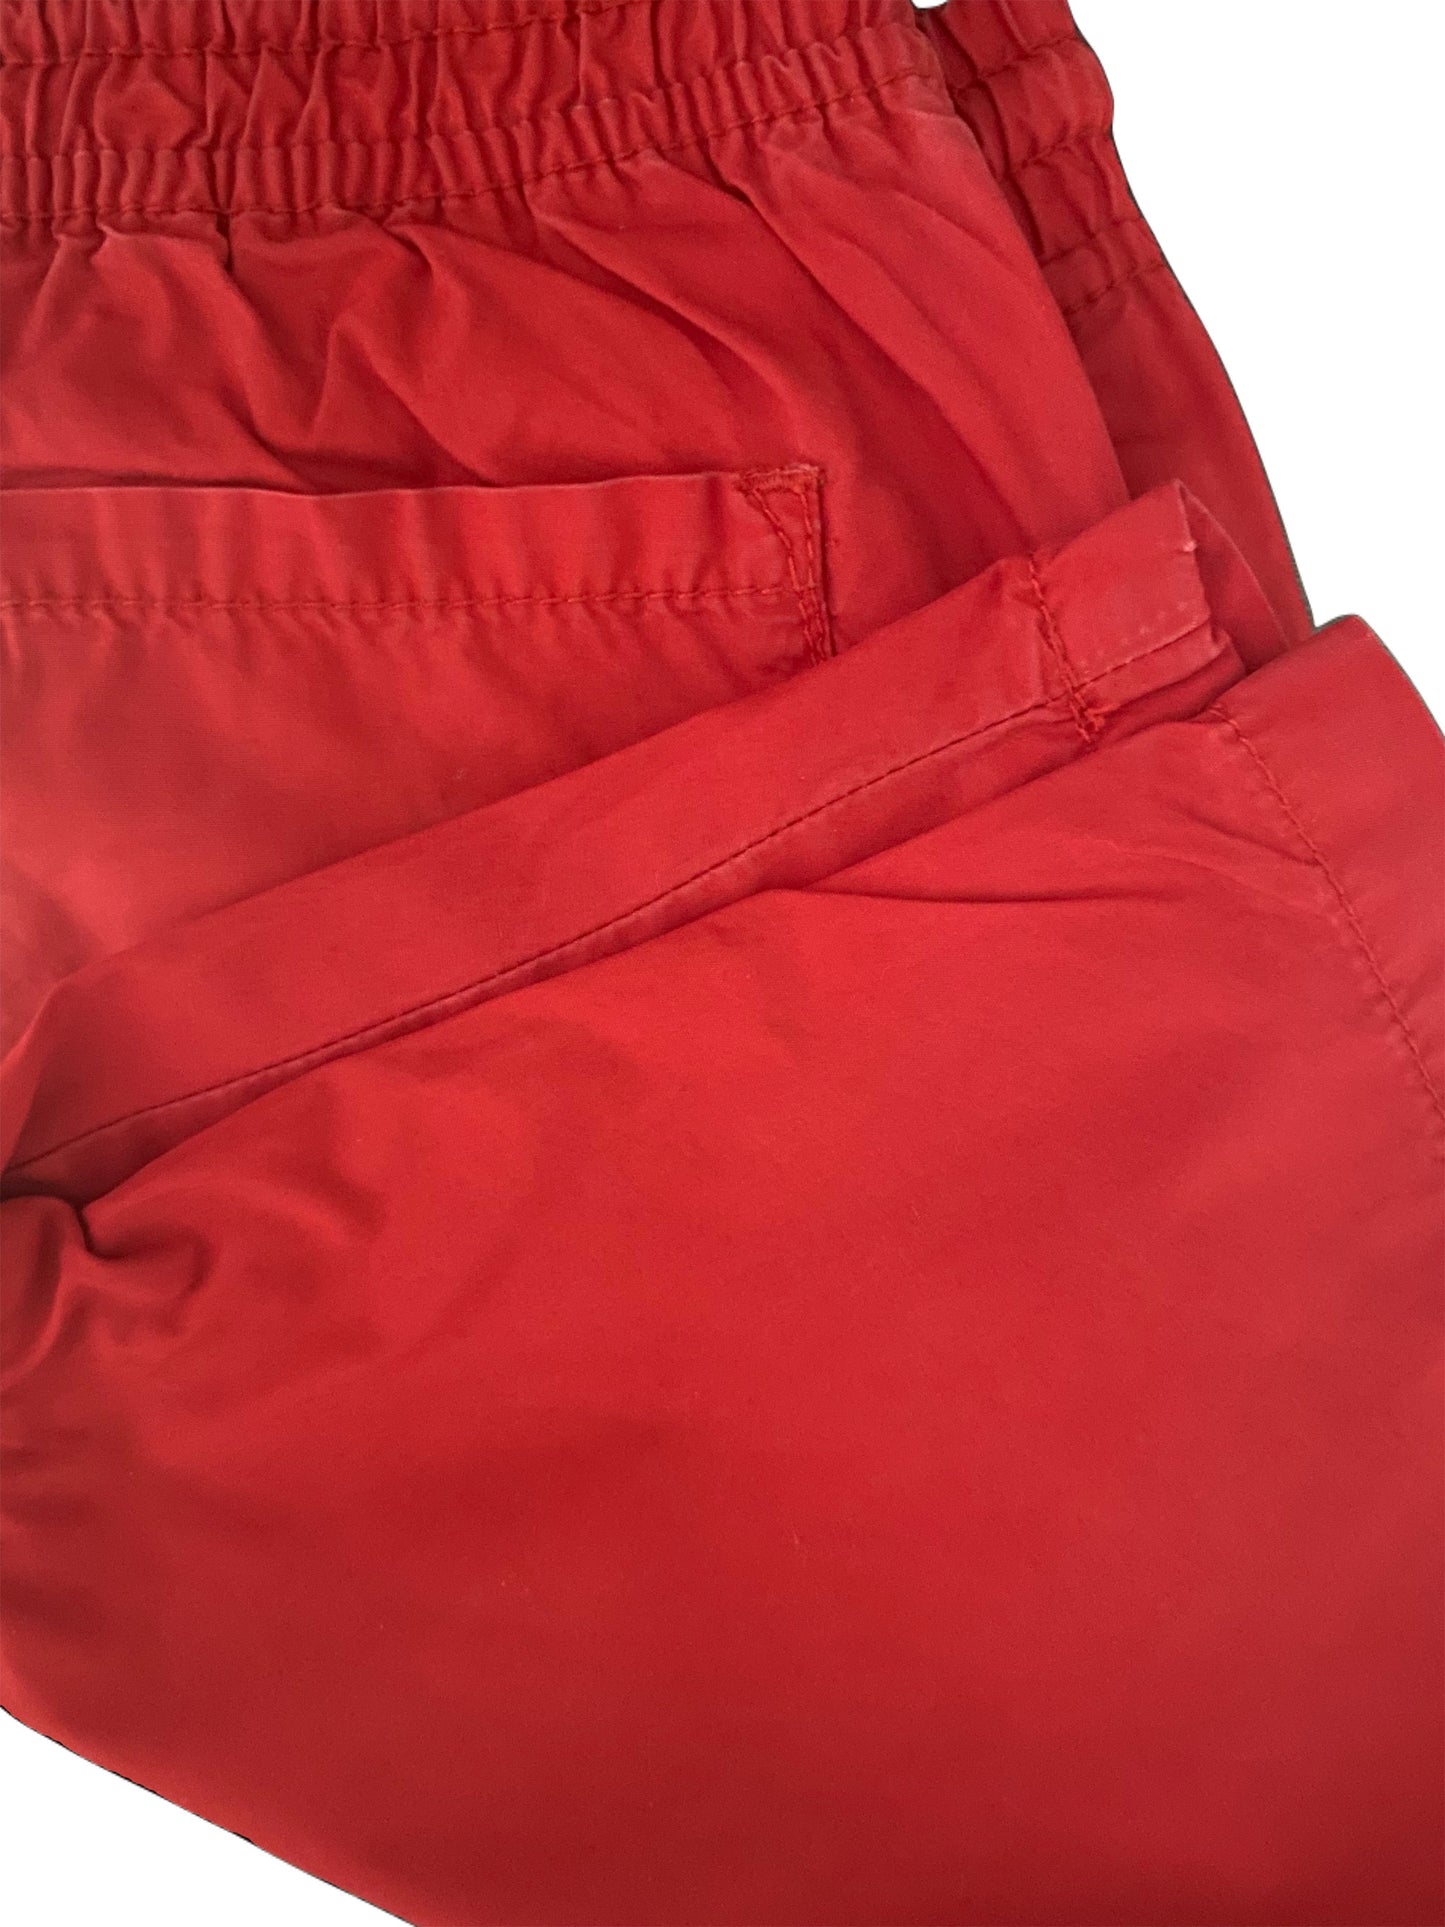 Red Drawstring Shorts